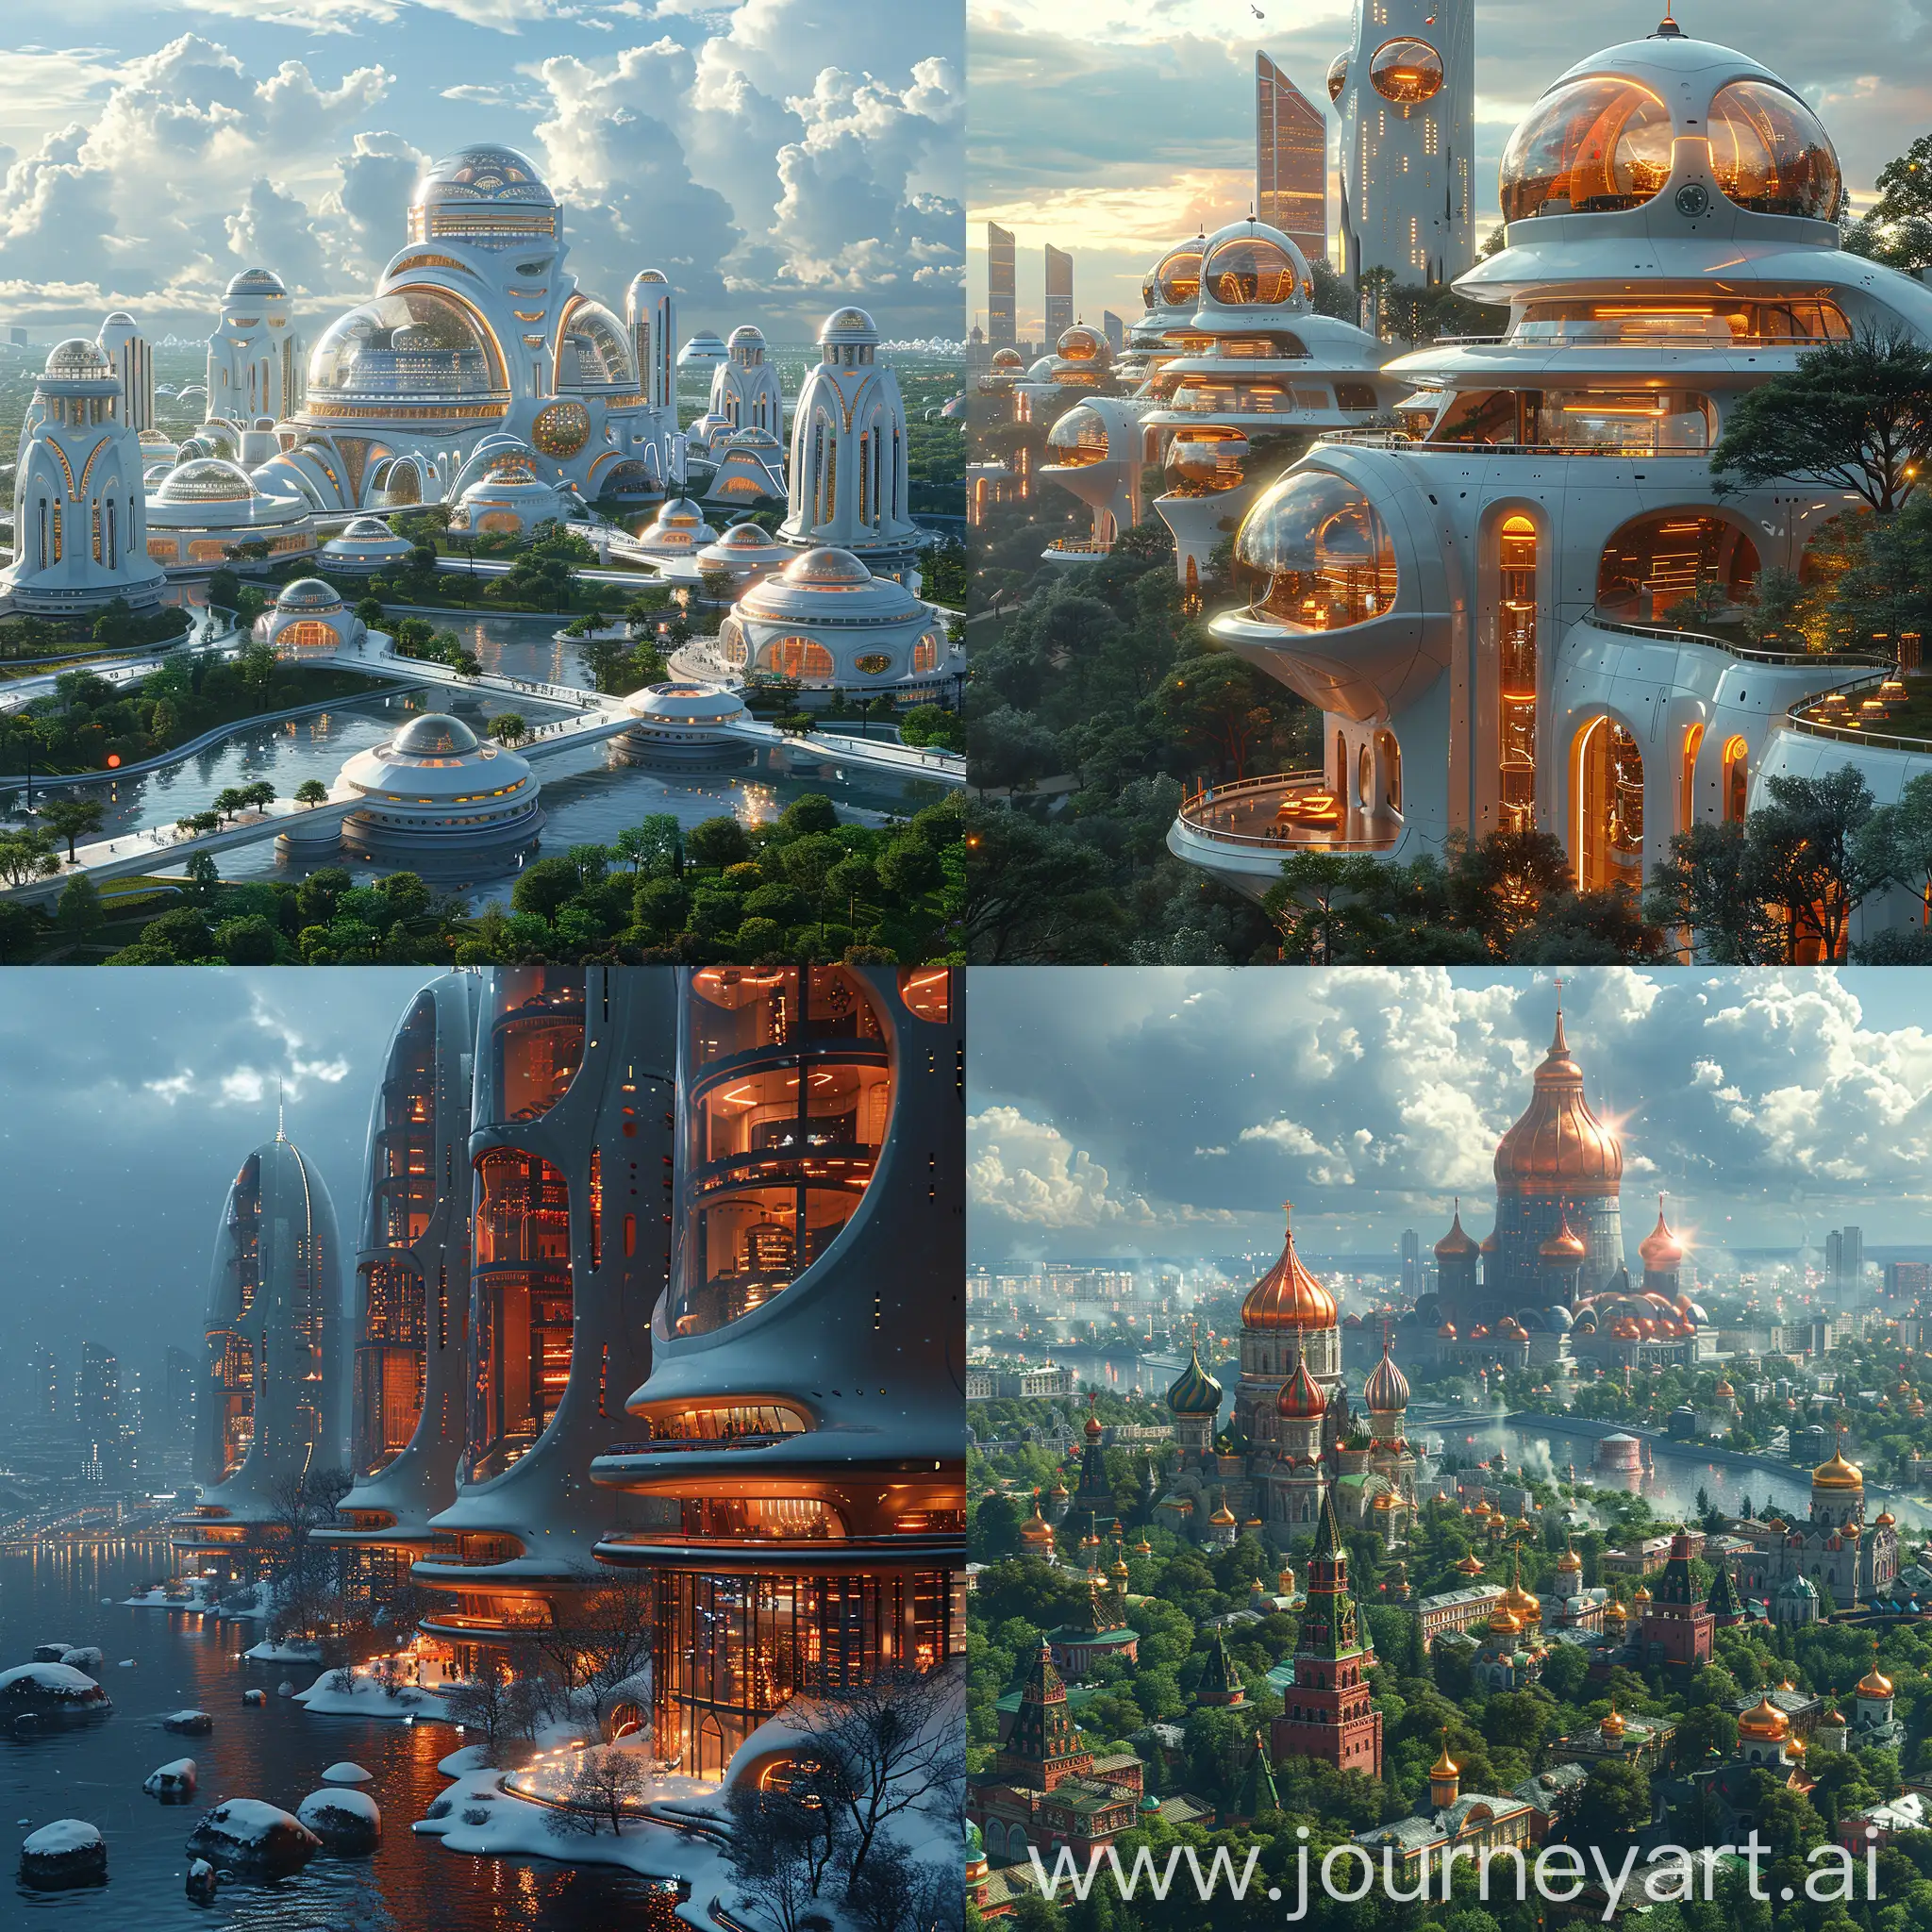 Futuristic-Moscow-A-Glimpse-into-Advanced-Civilization-with-UltraModern-Architecture